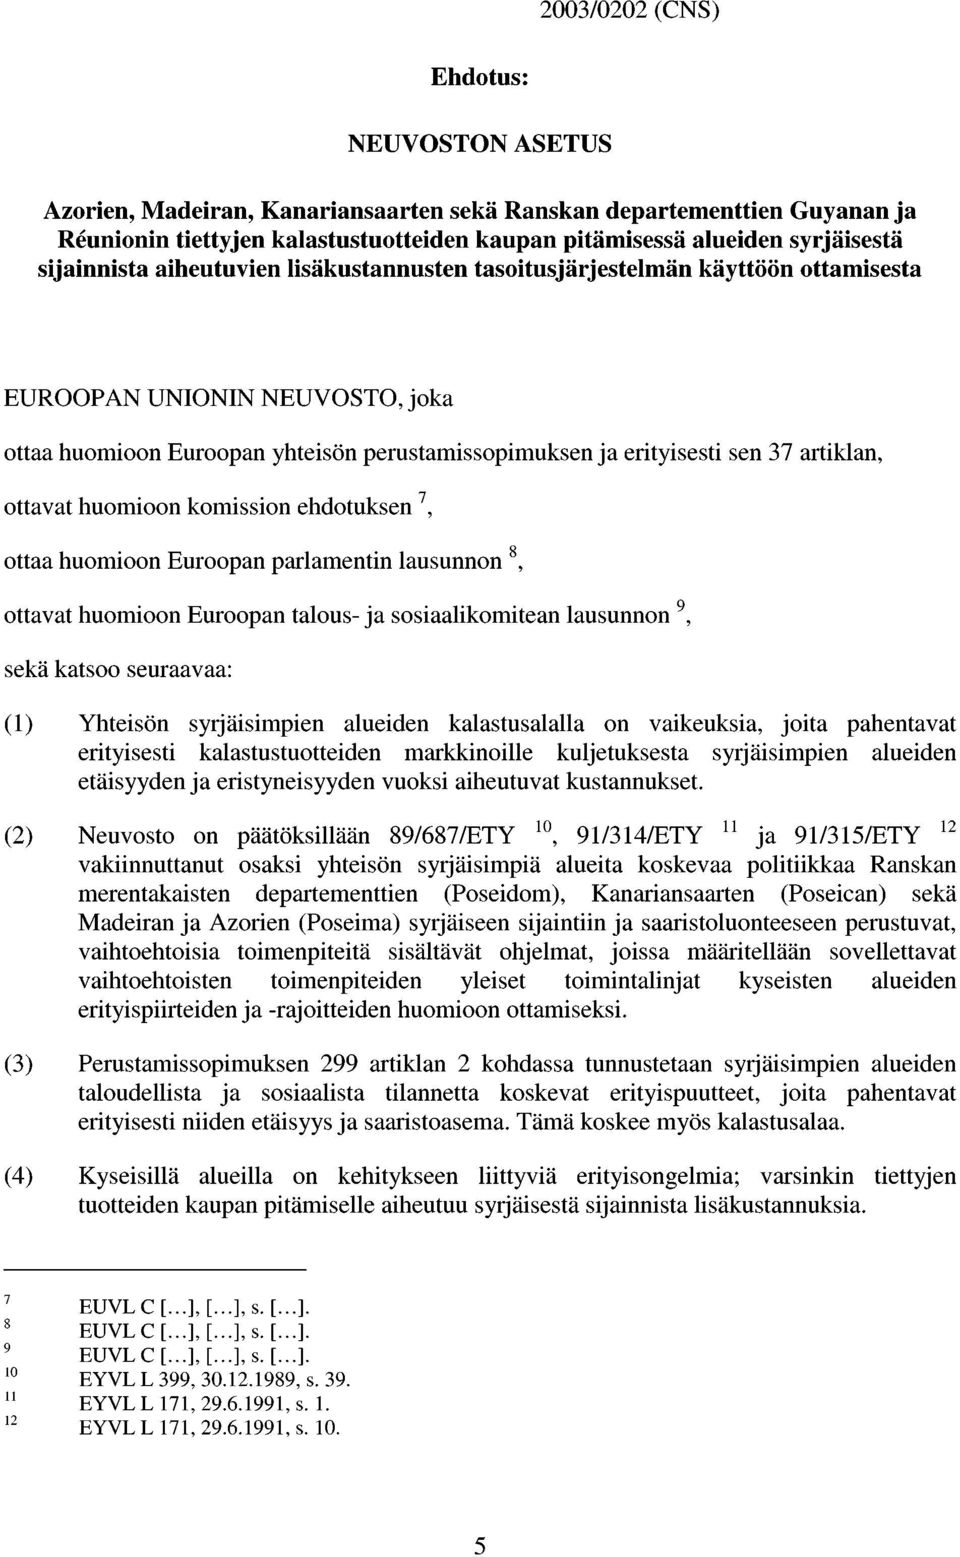 artiklan, ottavat huomioon komission ehdotuksen 7, ottaa huomioon Euroopan parlamentin lausunnon 8, ottavat huomioon Euroopan talous ja sosiaalikomitean lausunnon 9, sekä katsoo seuraavaa: (1)